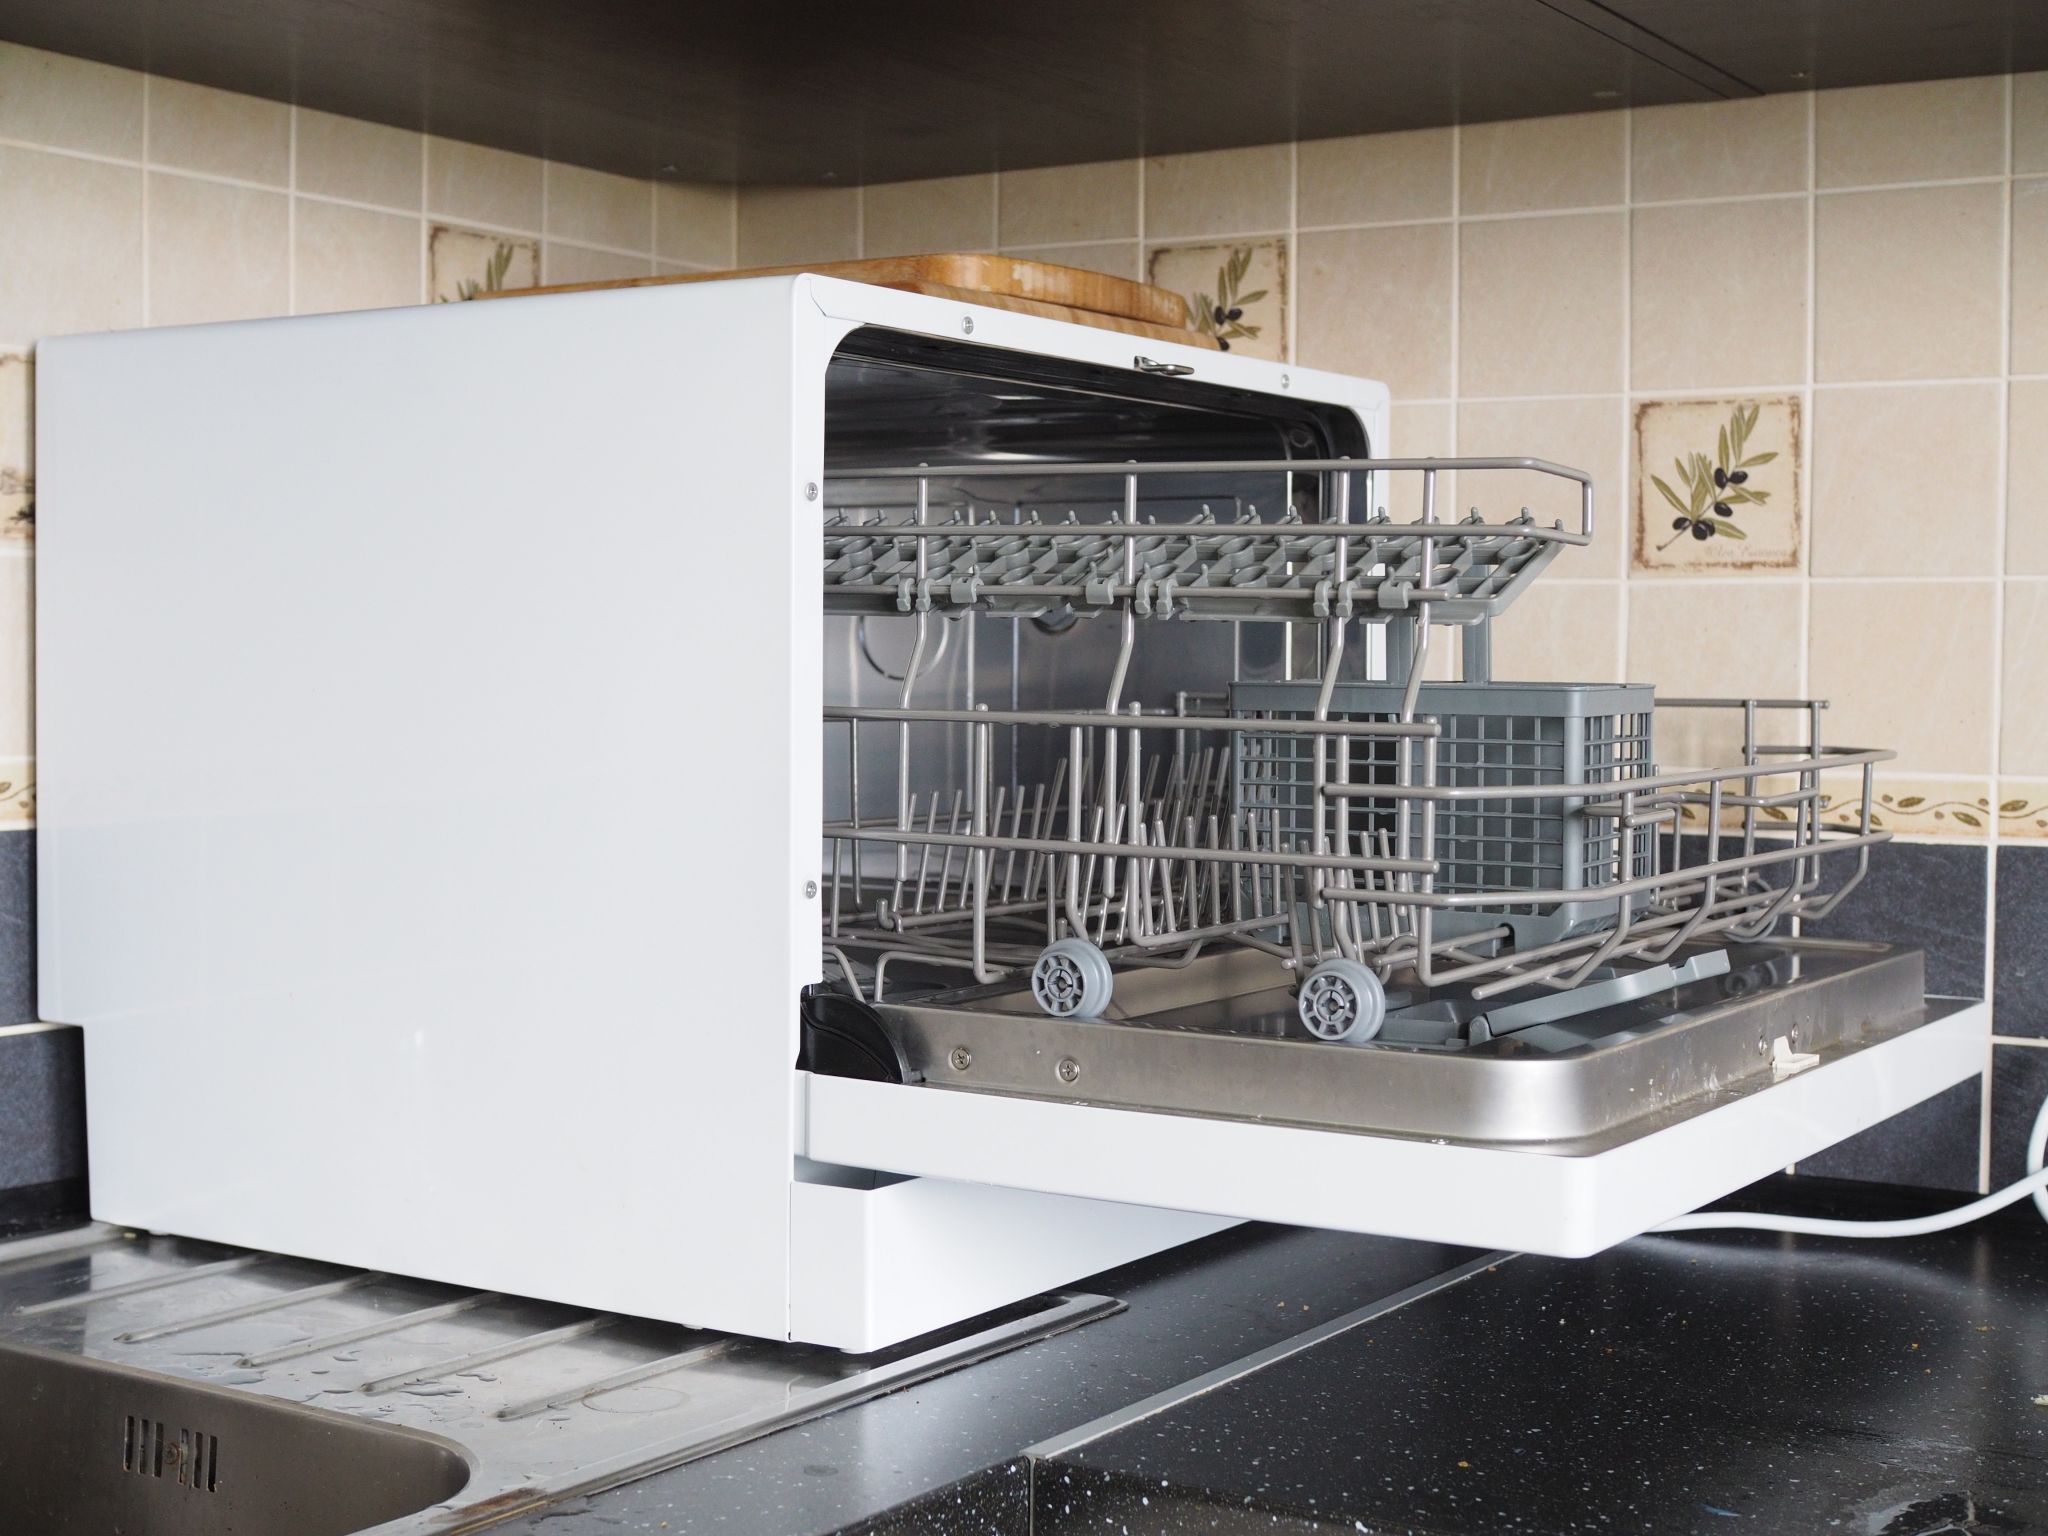 Посудомоечные машины 3 комплекта. Flavia td 55 Valara. Посудомоечная машина 55см. Td 55 Valara посудомоечная машина (настольная). ПММ Флавия.